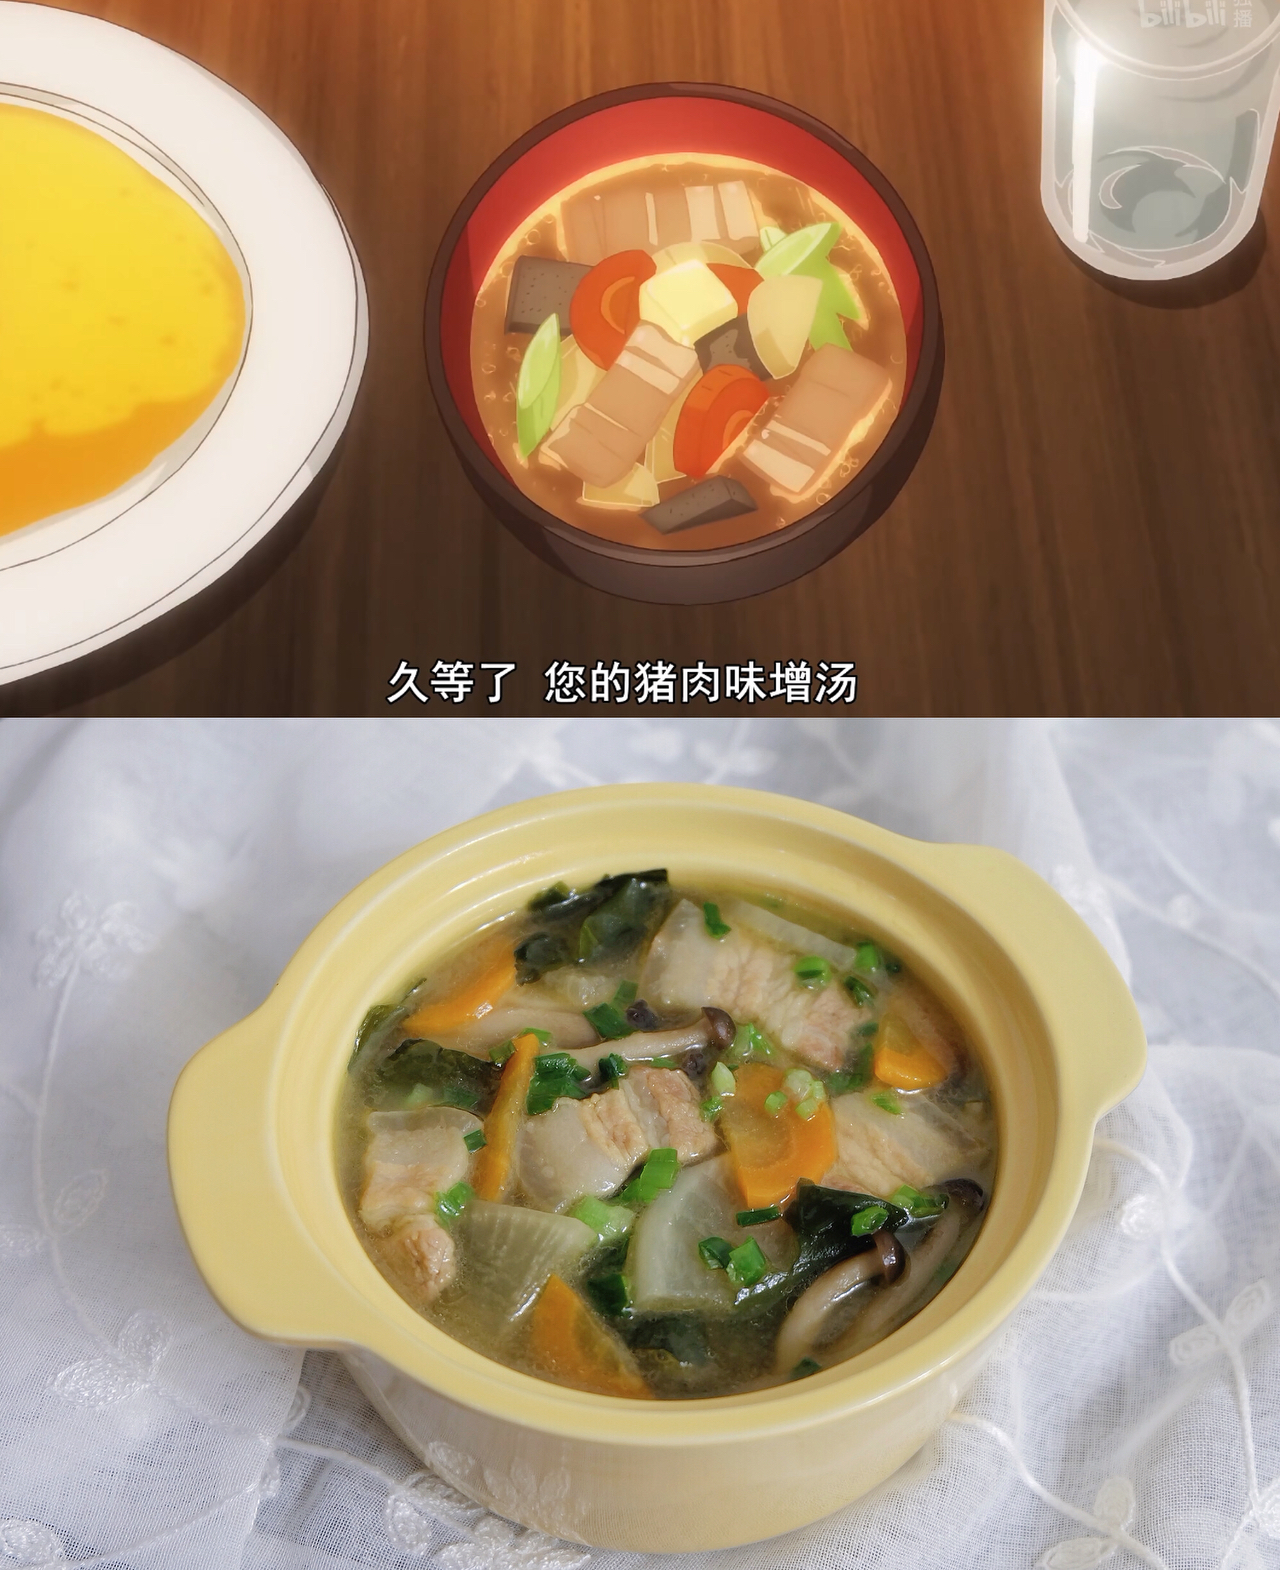 味增系列 - 究极纯粹的猪肉味增汤